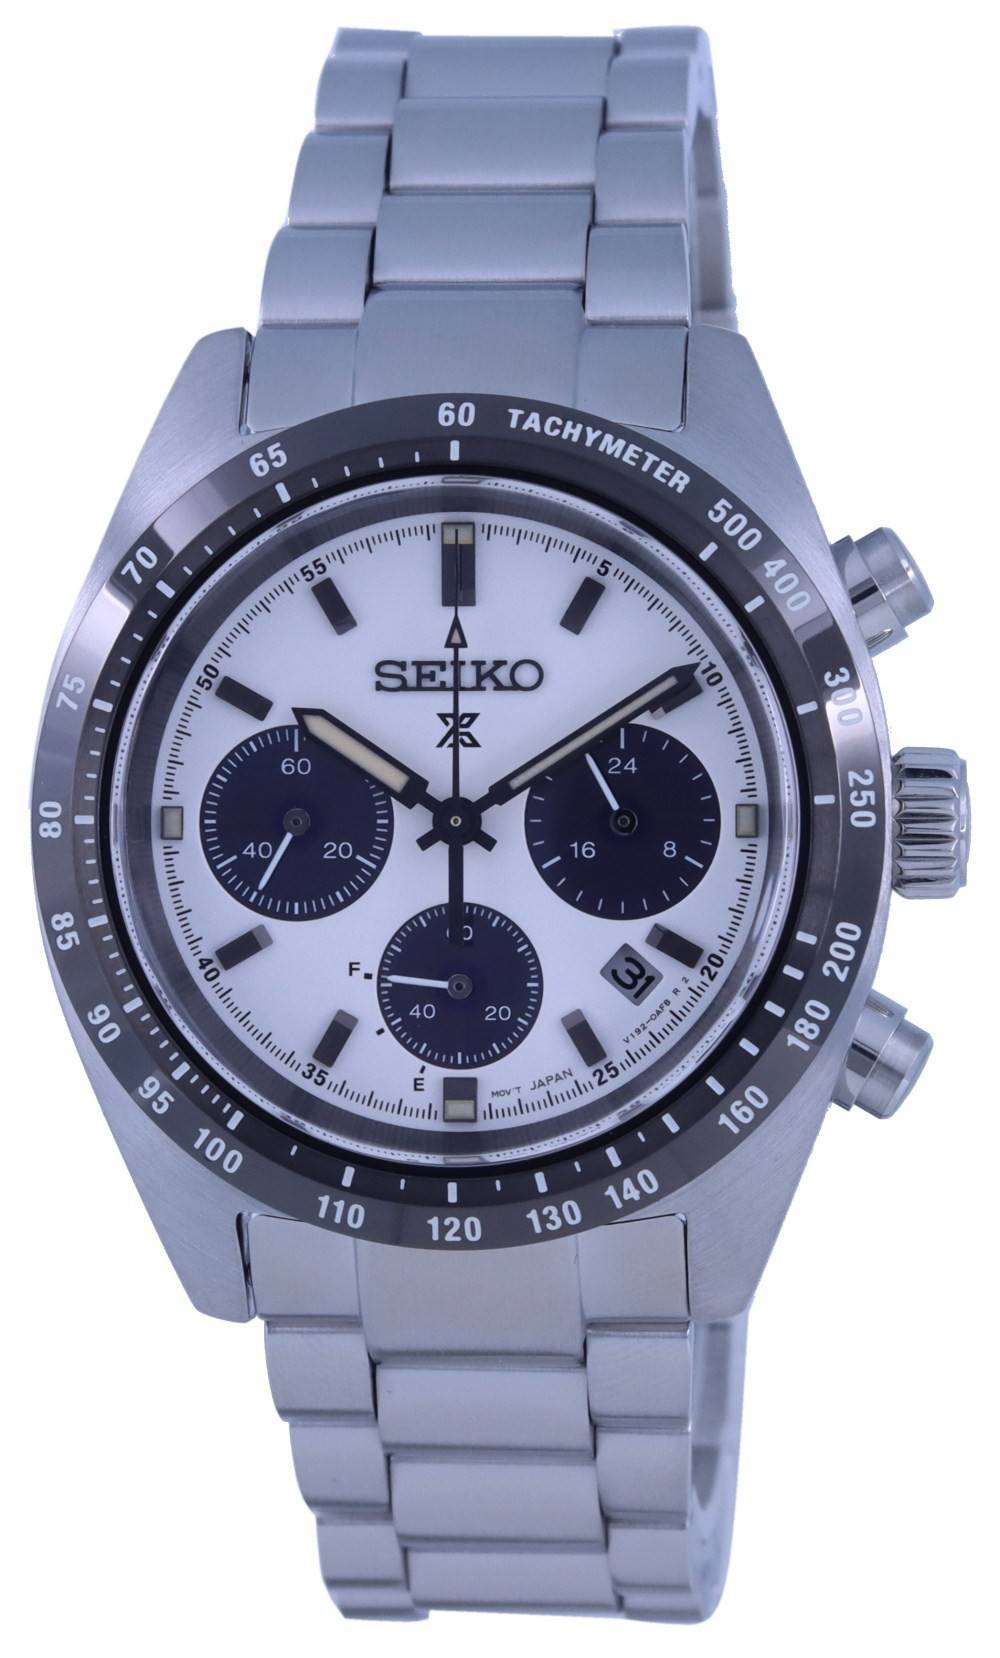 Đồng hồ Seiko Chronograph - Đồng hồ tự động chronograph Seiko Men